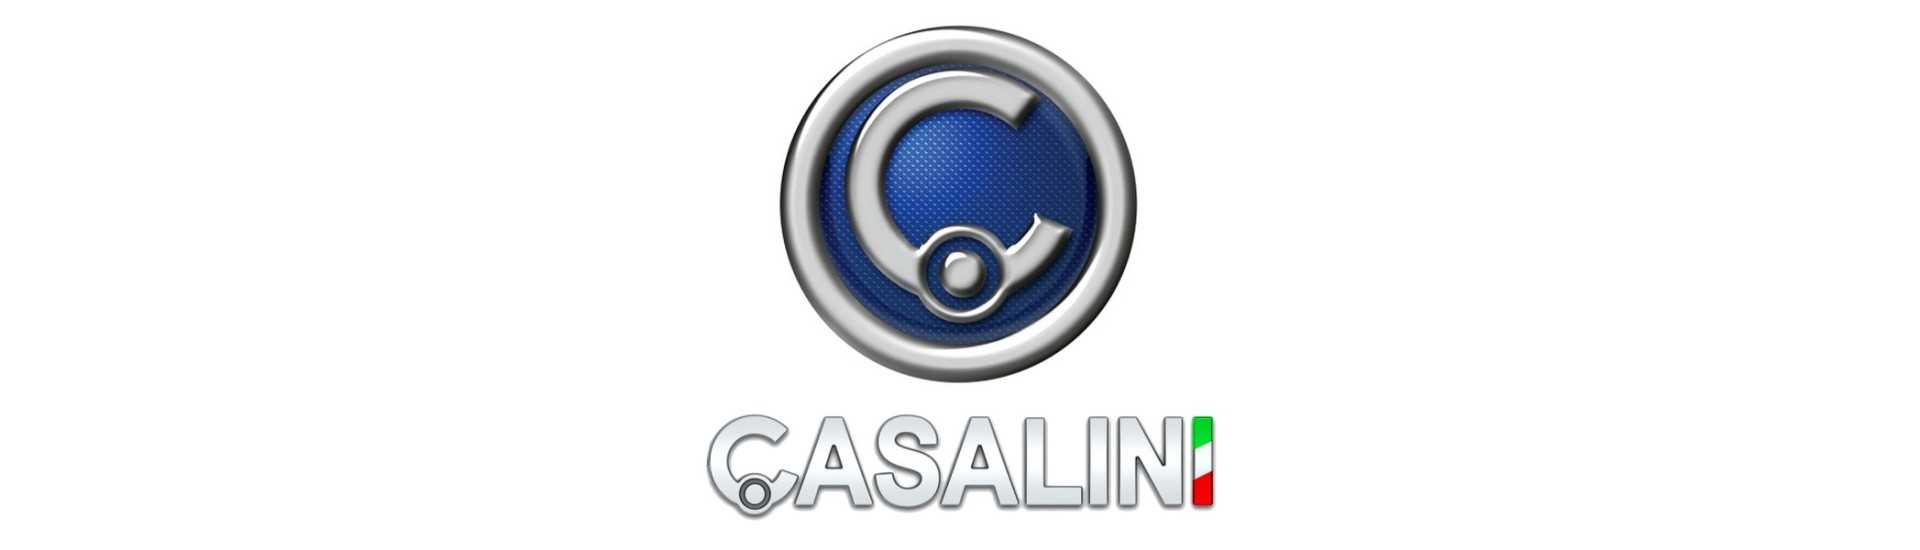 Paras auton hinta ilman lisenssiä Casalini